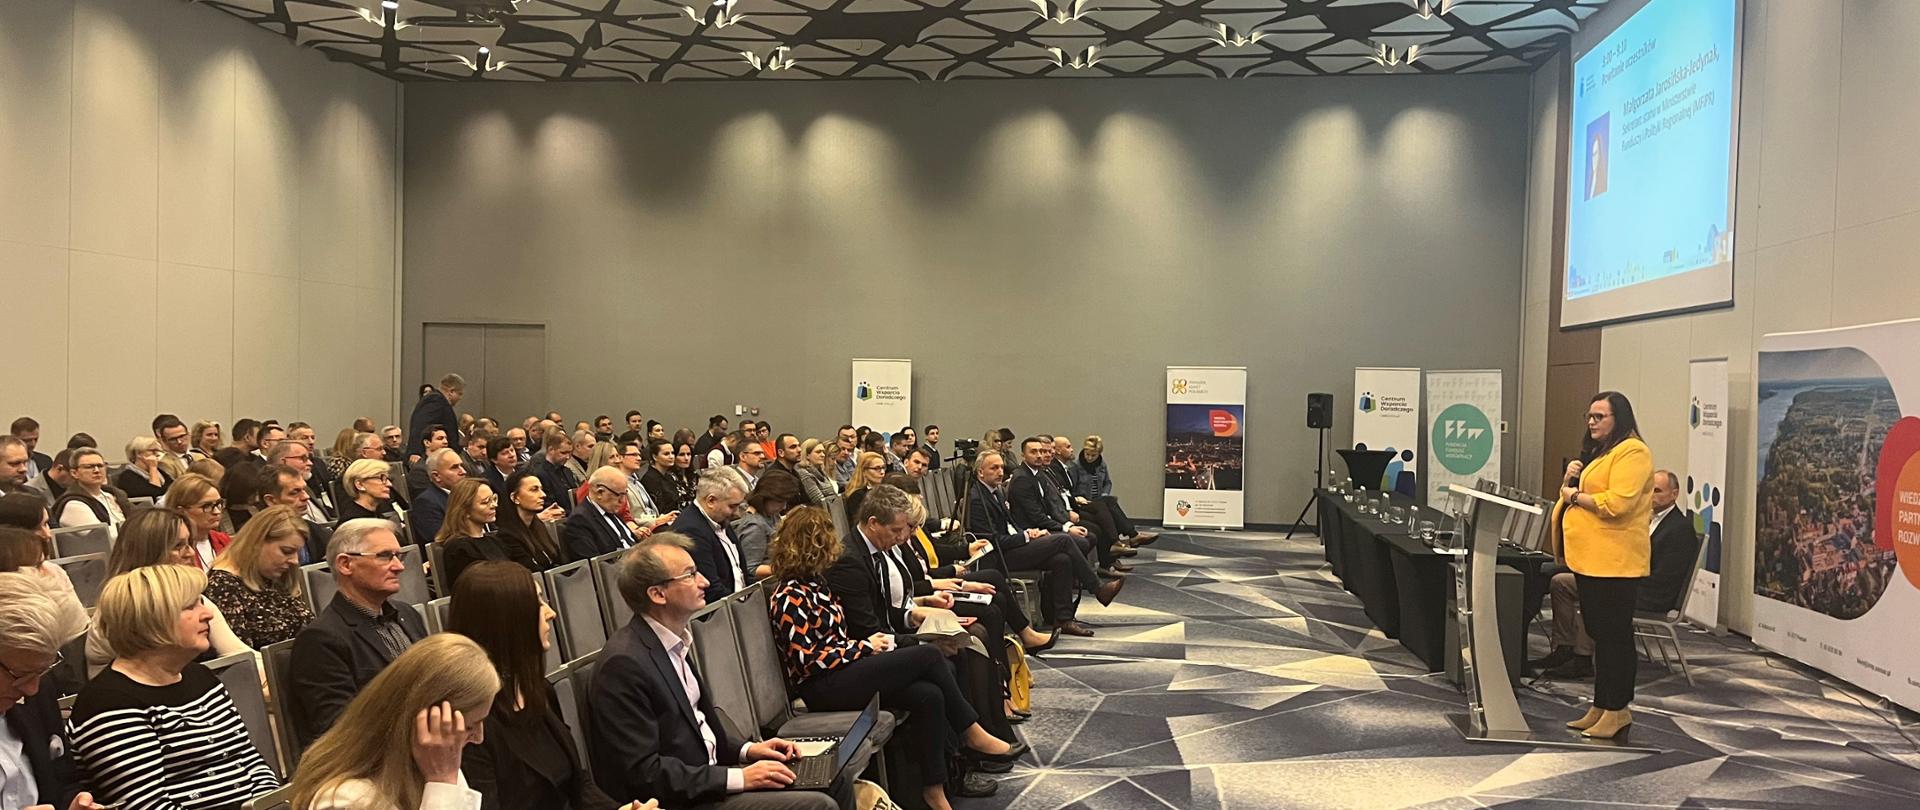 Na zdjęciu sala konferencyjna wypełniona siedzącymi słuchaczami. Po lewej przy mównicy stoi kobieta - wiceminister Małgorzata Jarosińska-Jedynak.